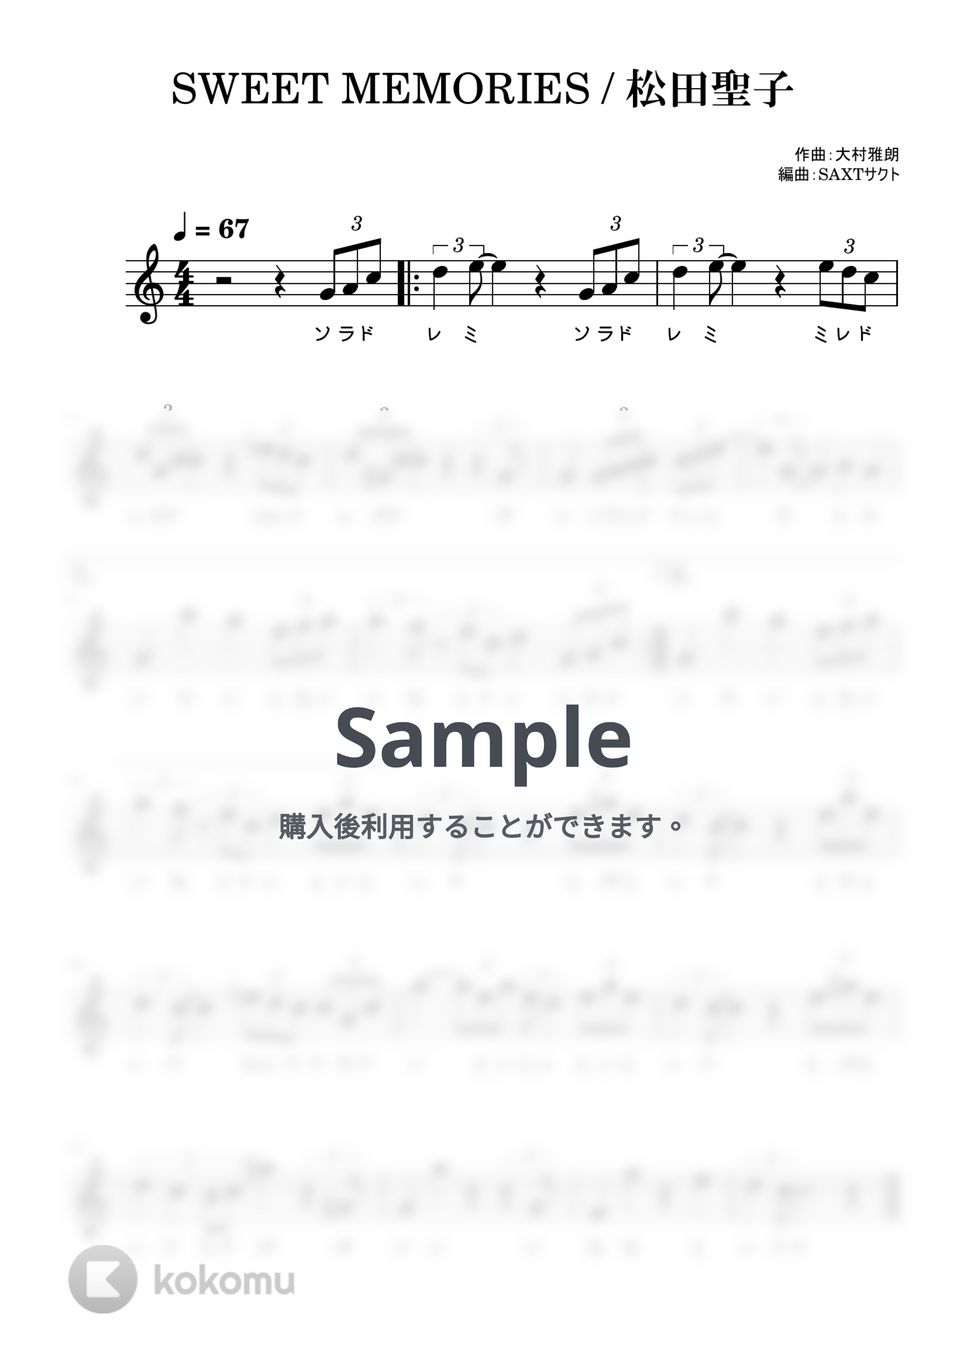 松田聖子 - SWEET MEMORIES (めちゃラク譜・ドレミあり) by SAXT